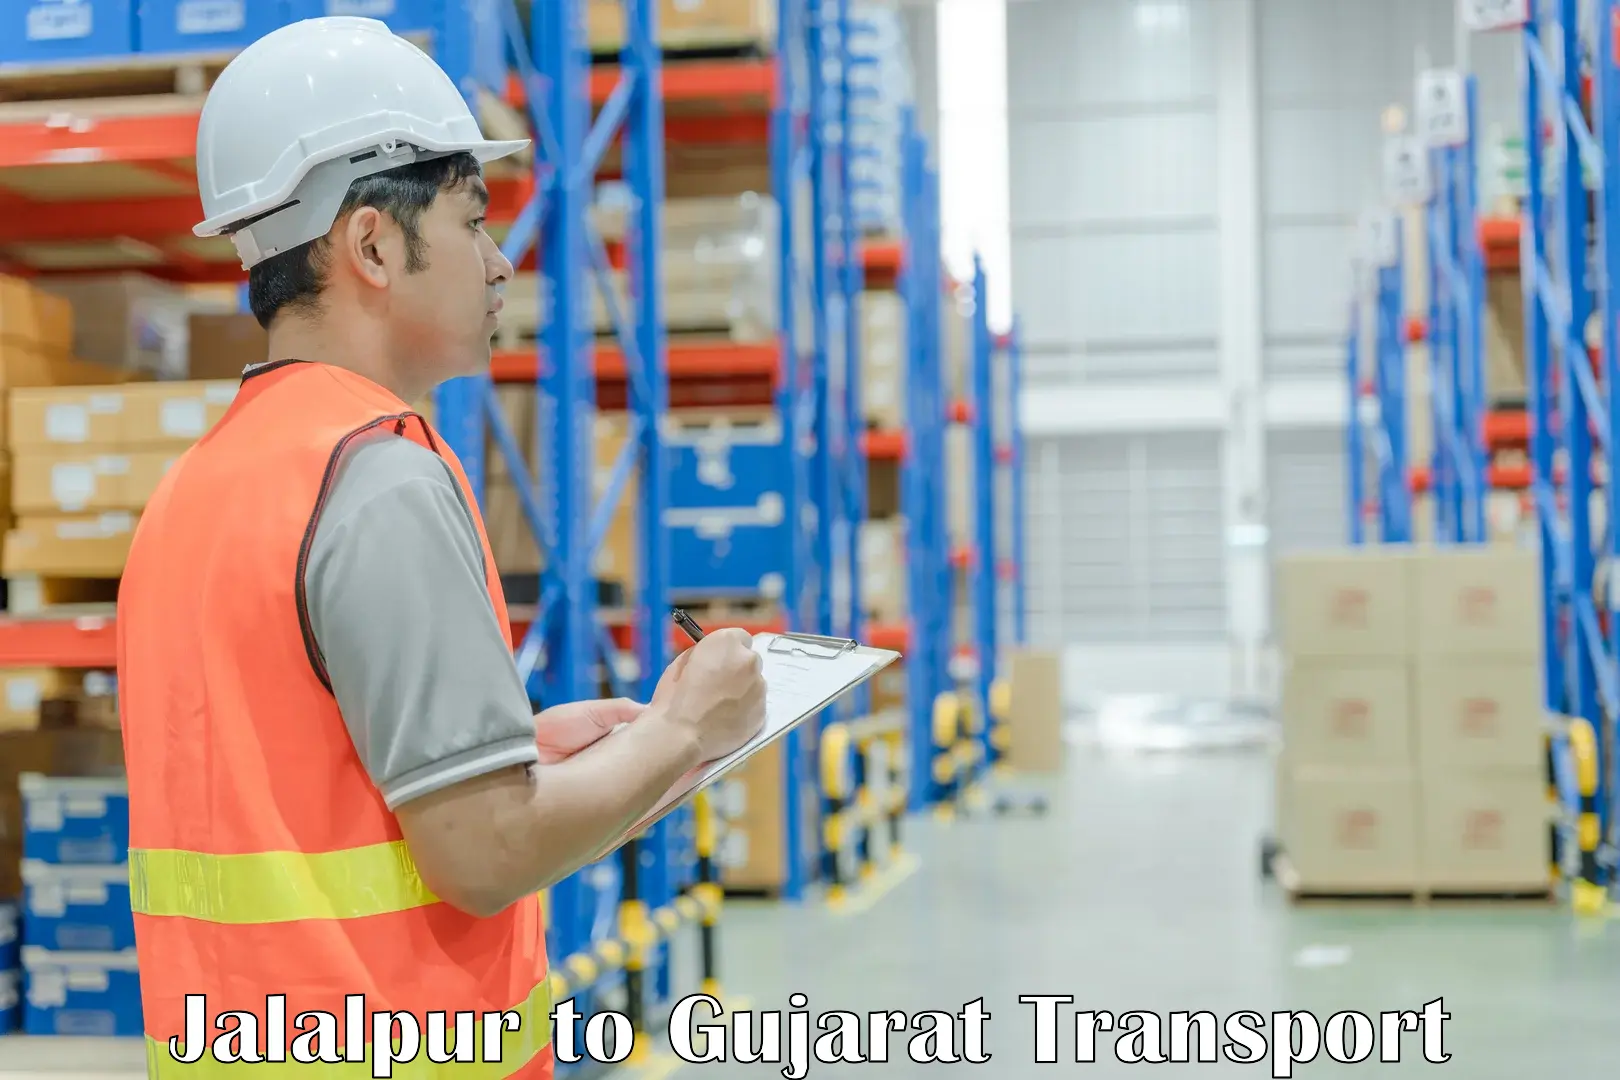 Shipping partner Jalalpur to Ahwa